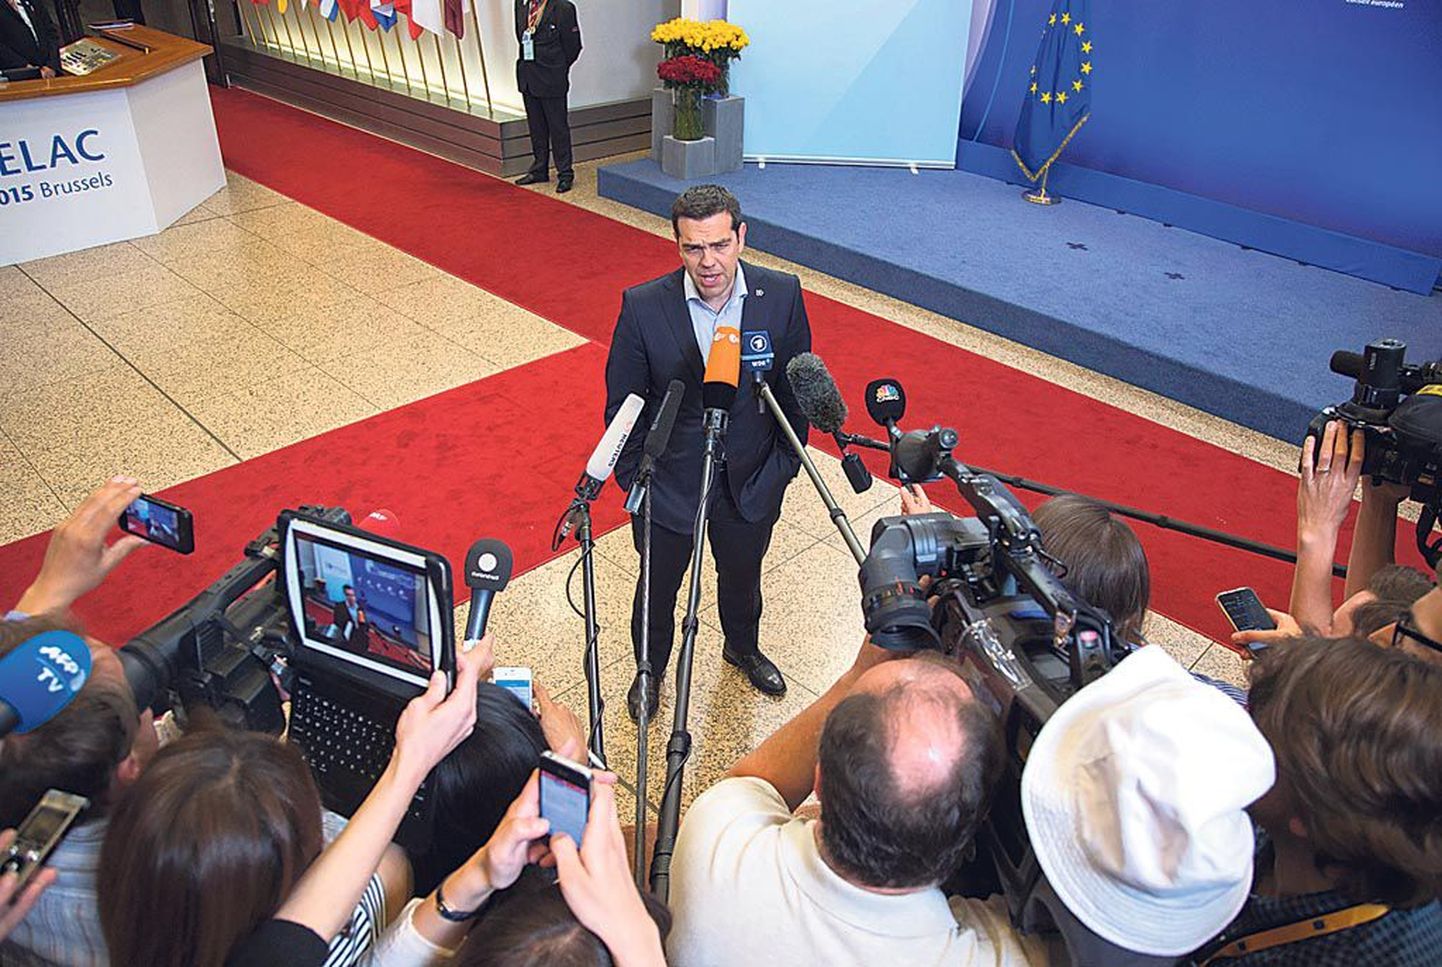 Kreeka peaministril Alexis Tsiprasel polnud meediale erilist rõõmusõnumit.